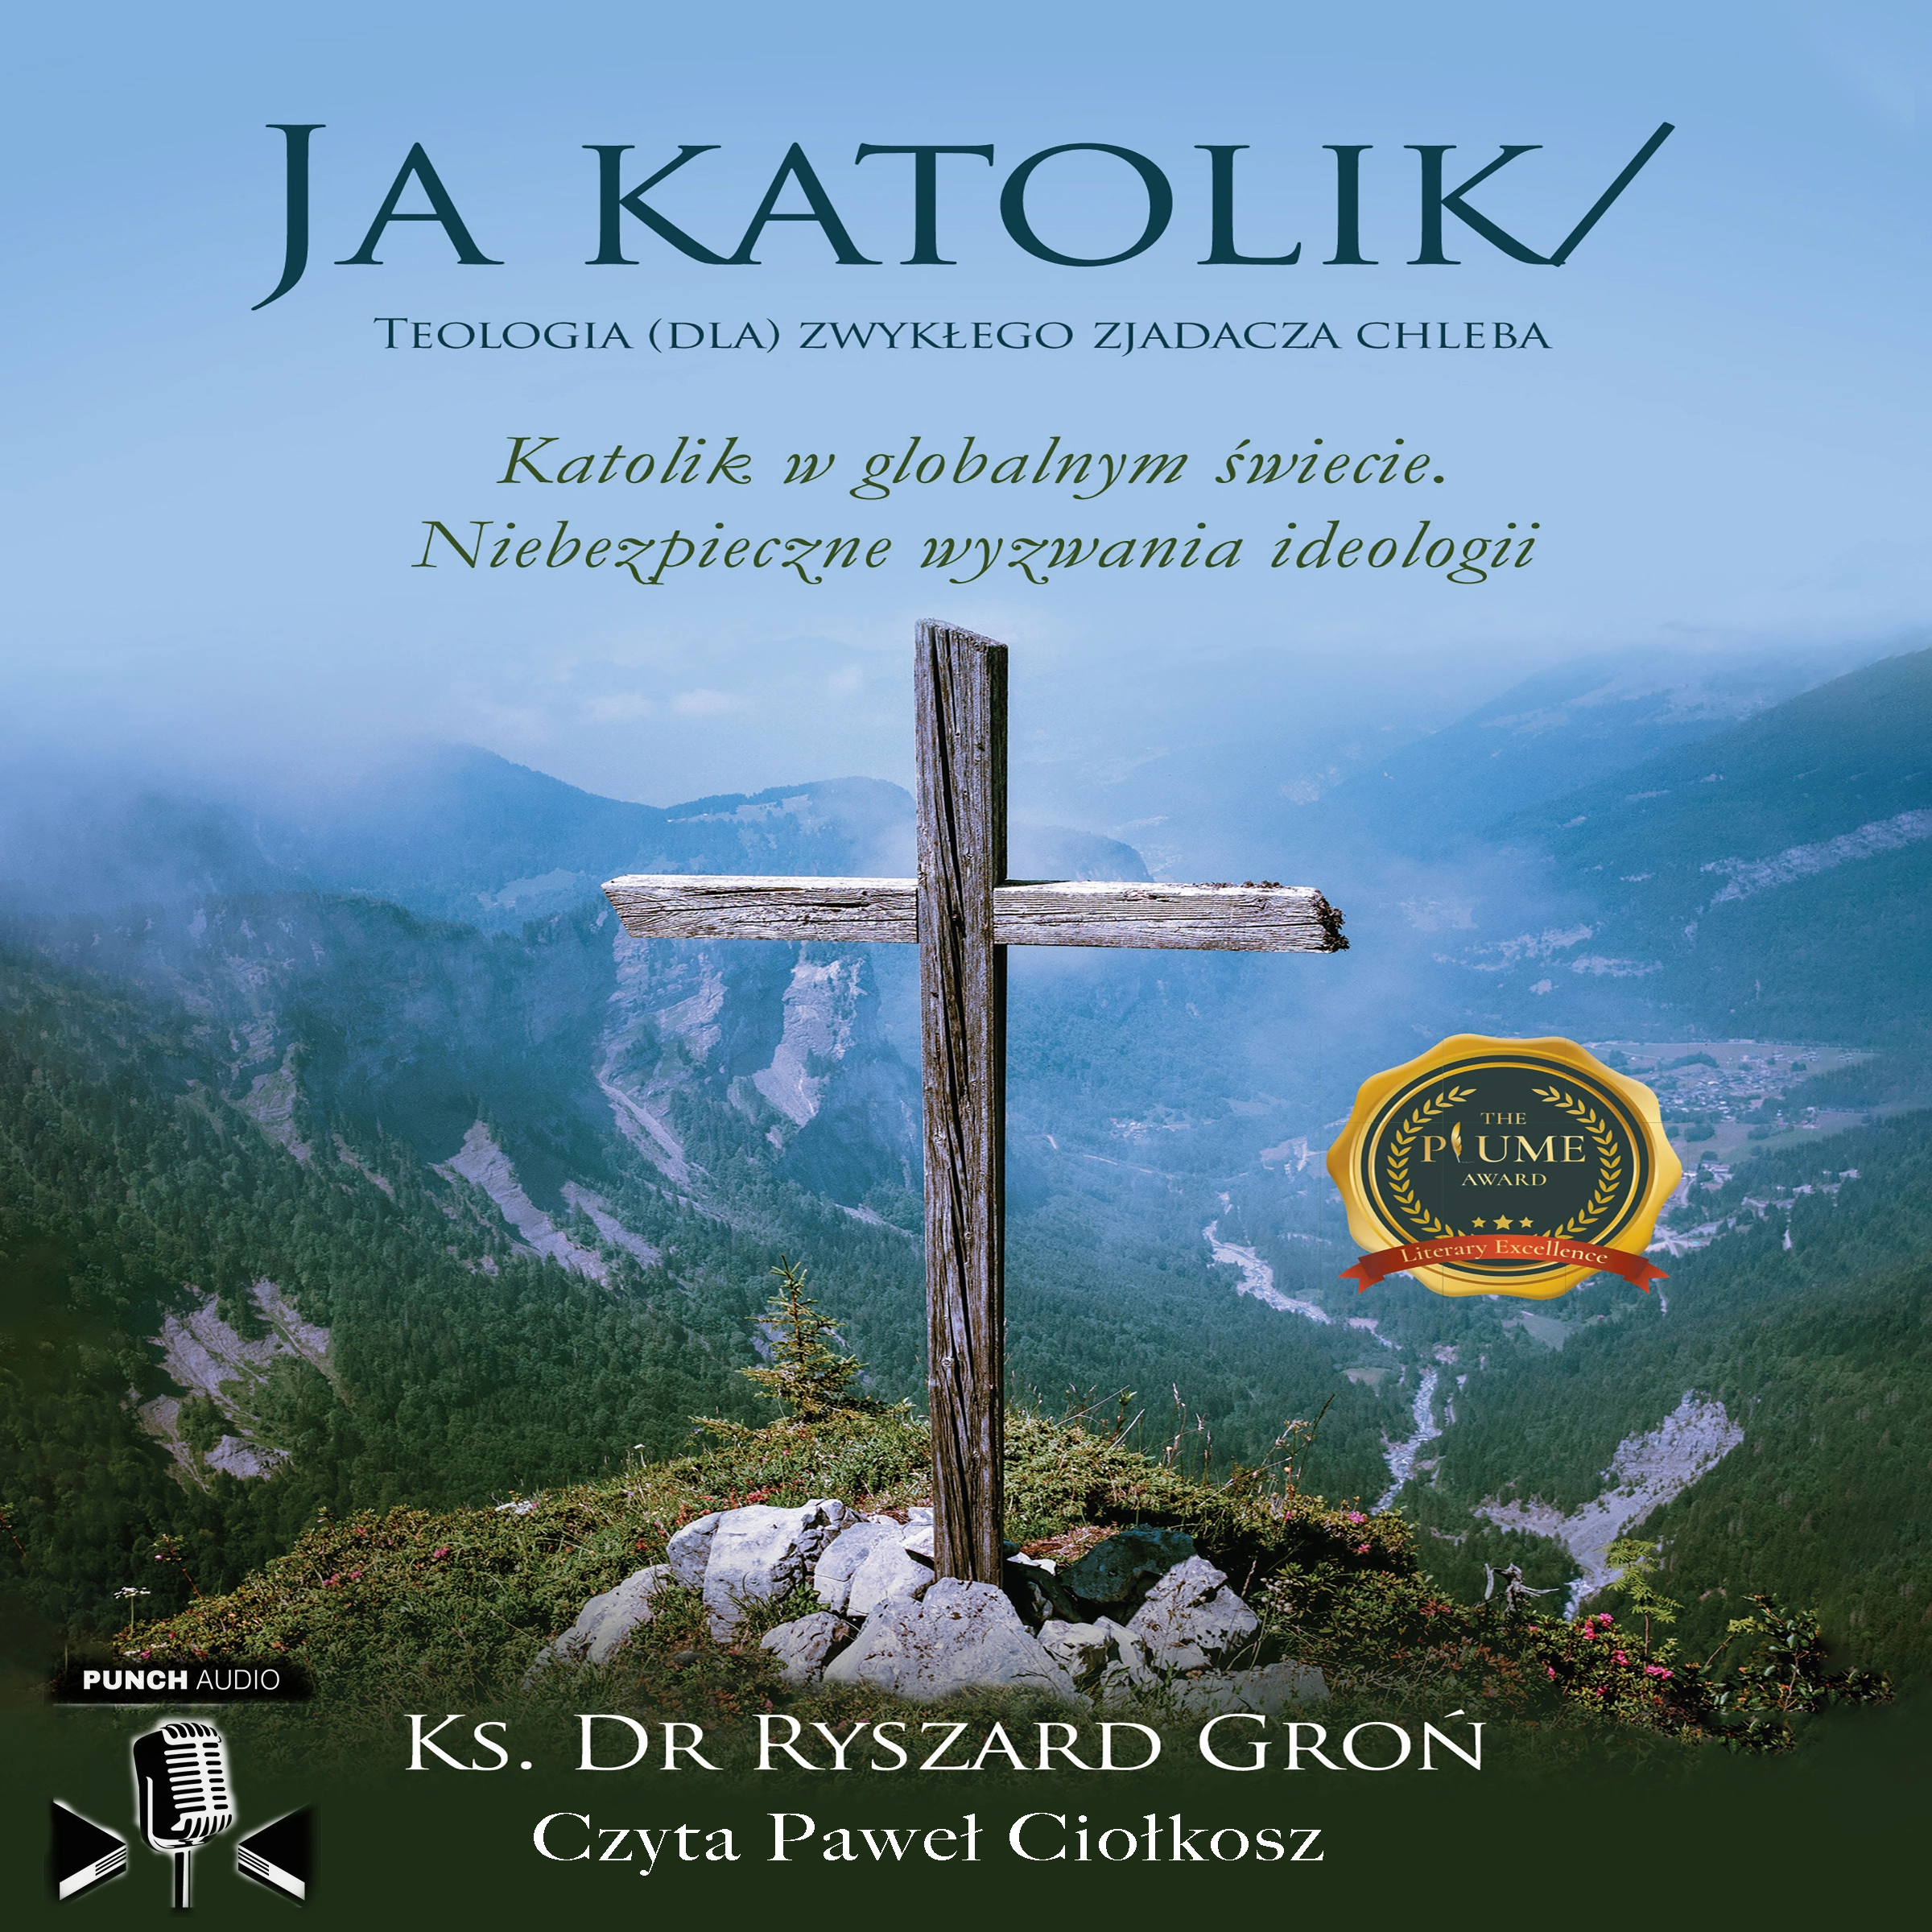 Ja Katolik by Dr. Ryszar D Gron Audiobook